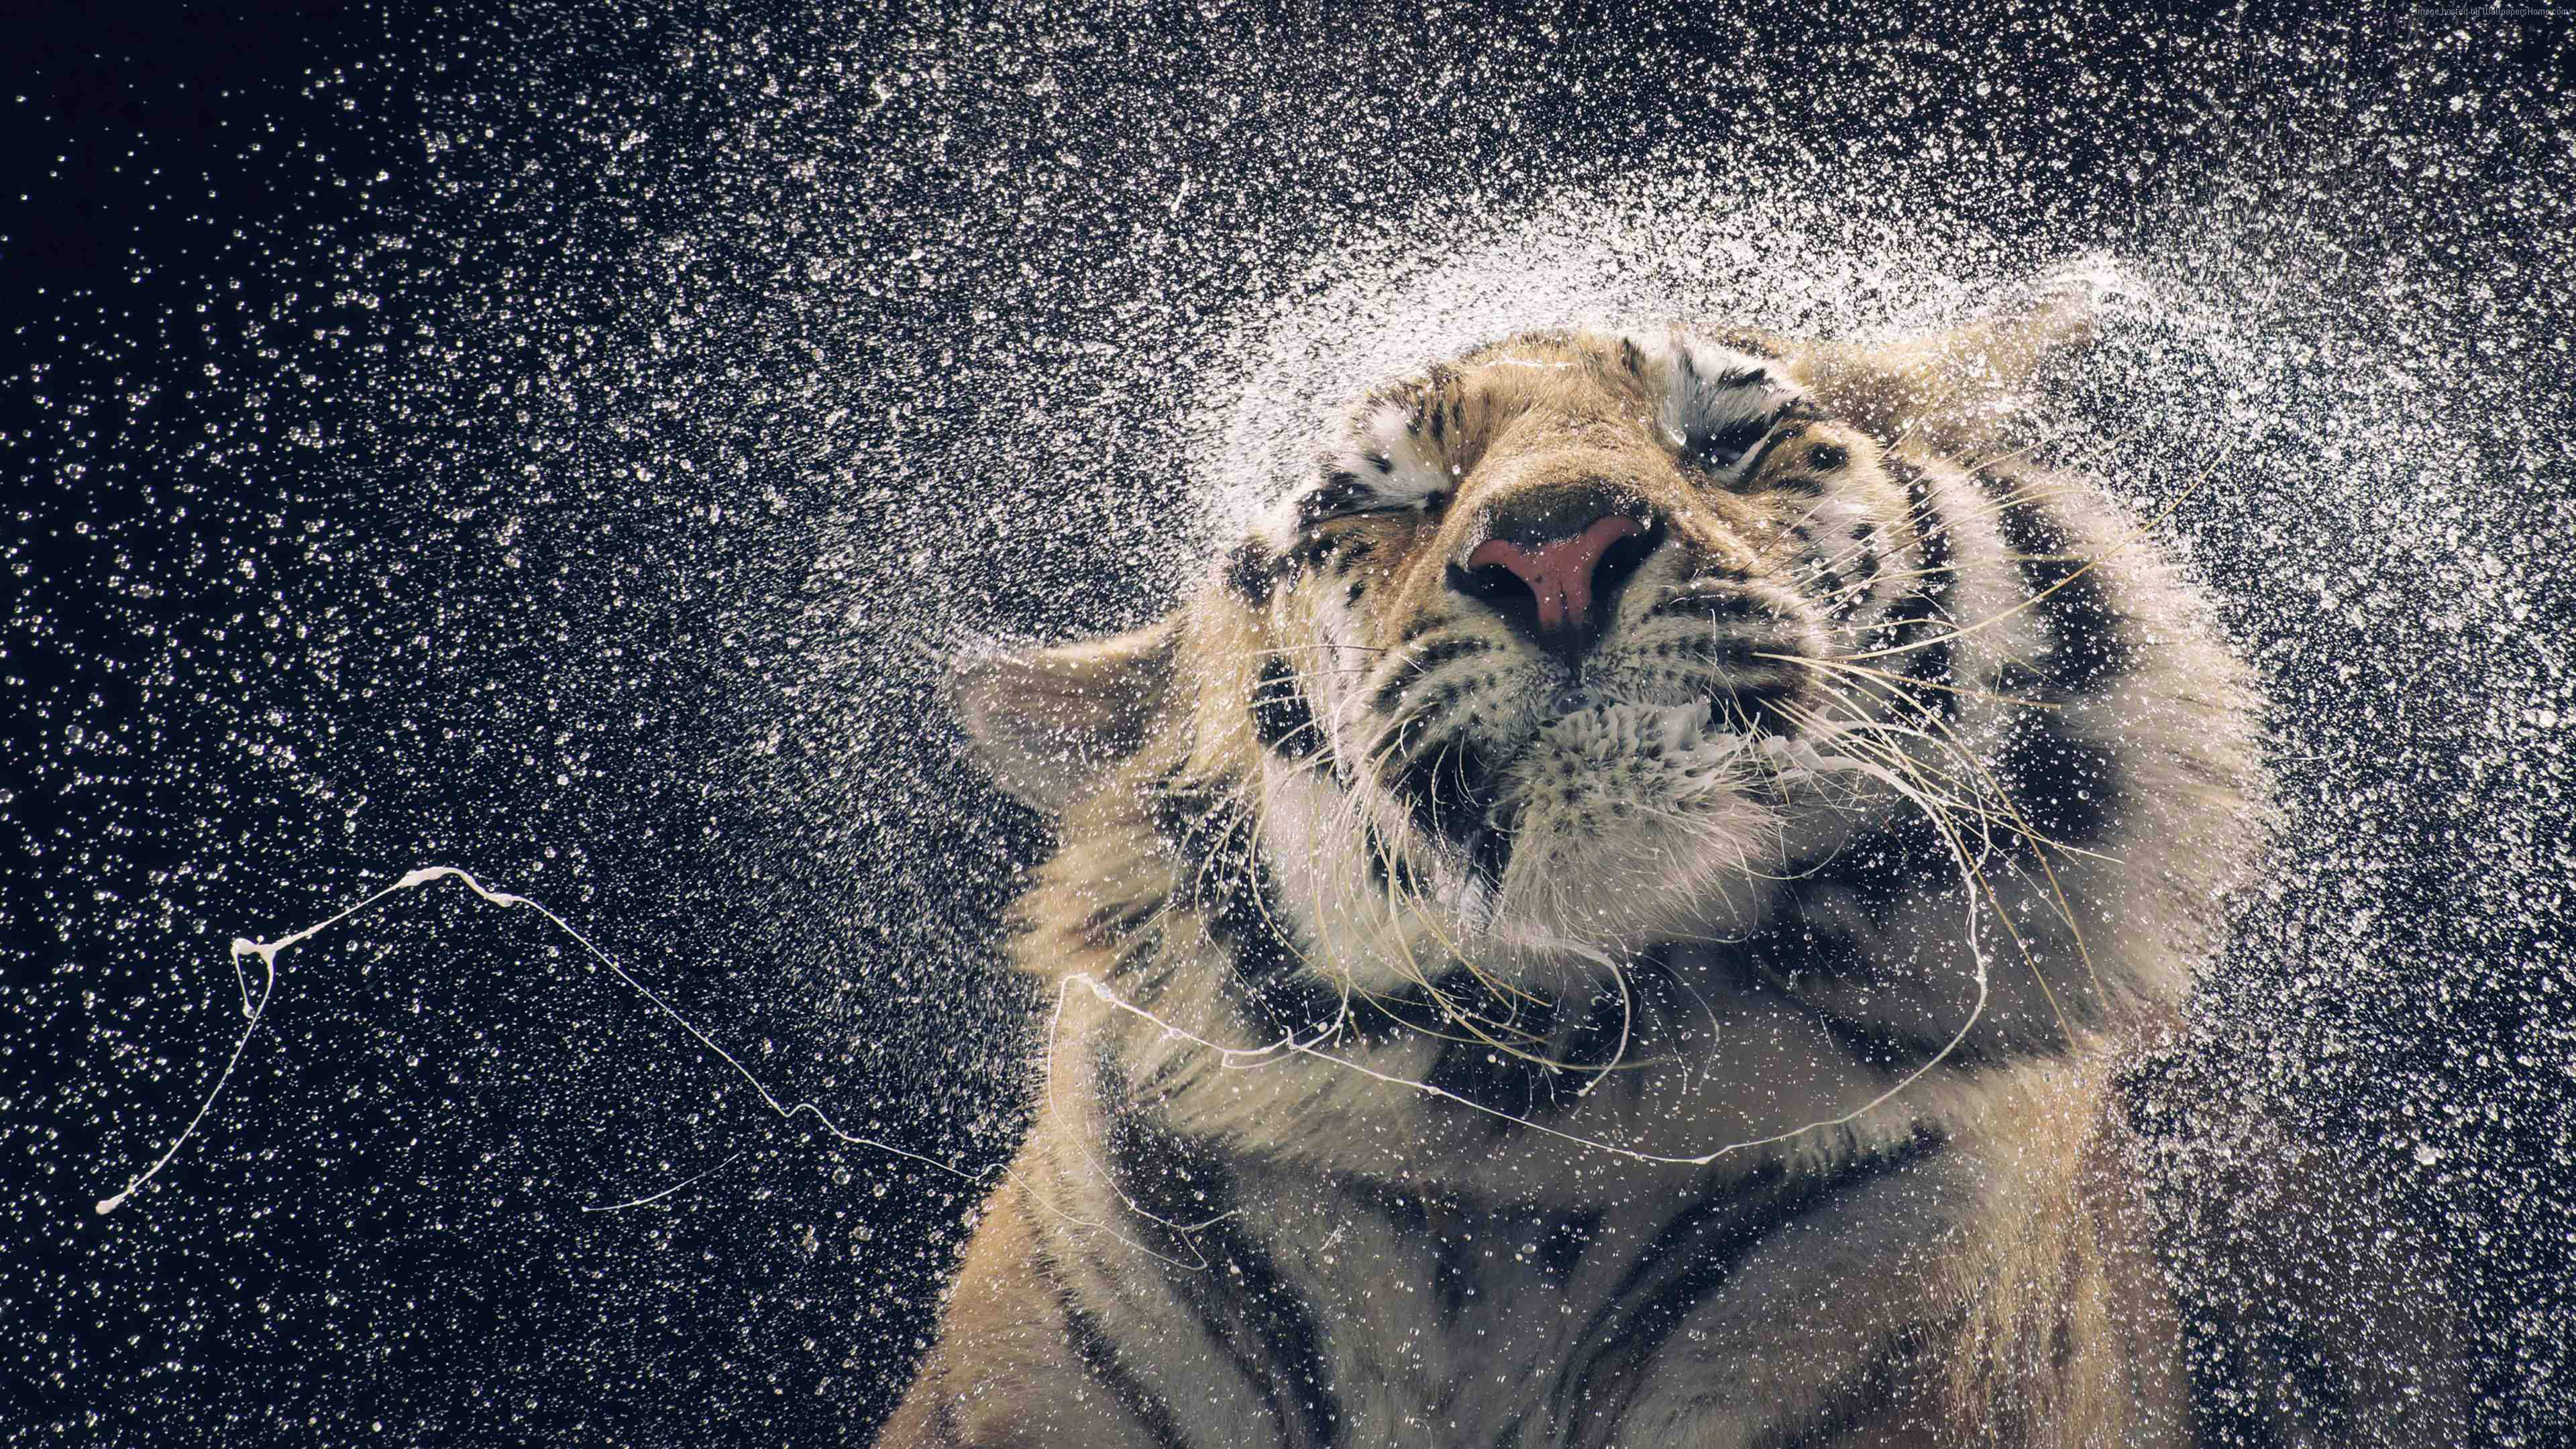 Awesome Hd Tiger Splashing Water Wallpaper